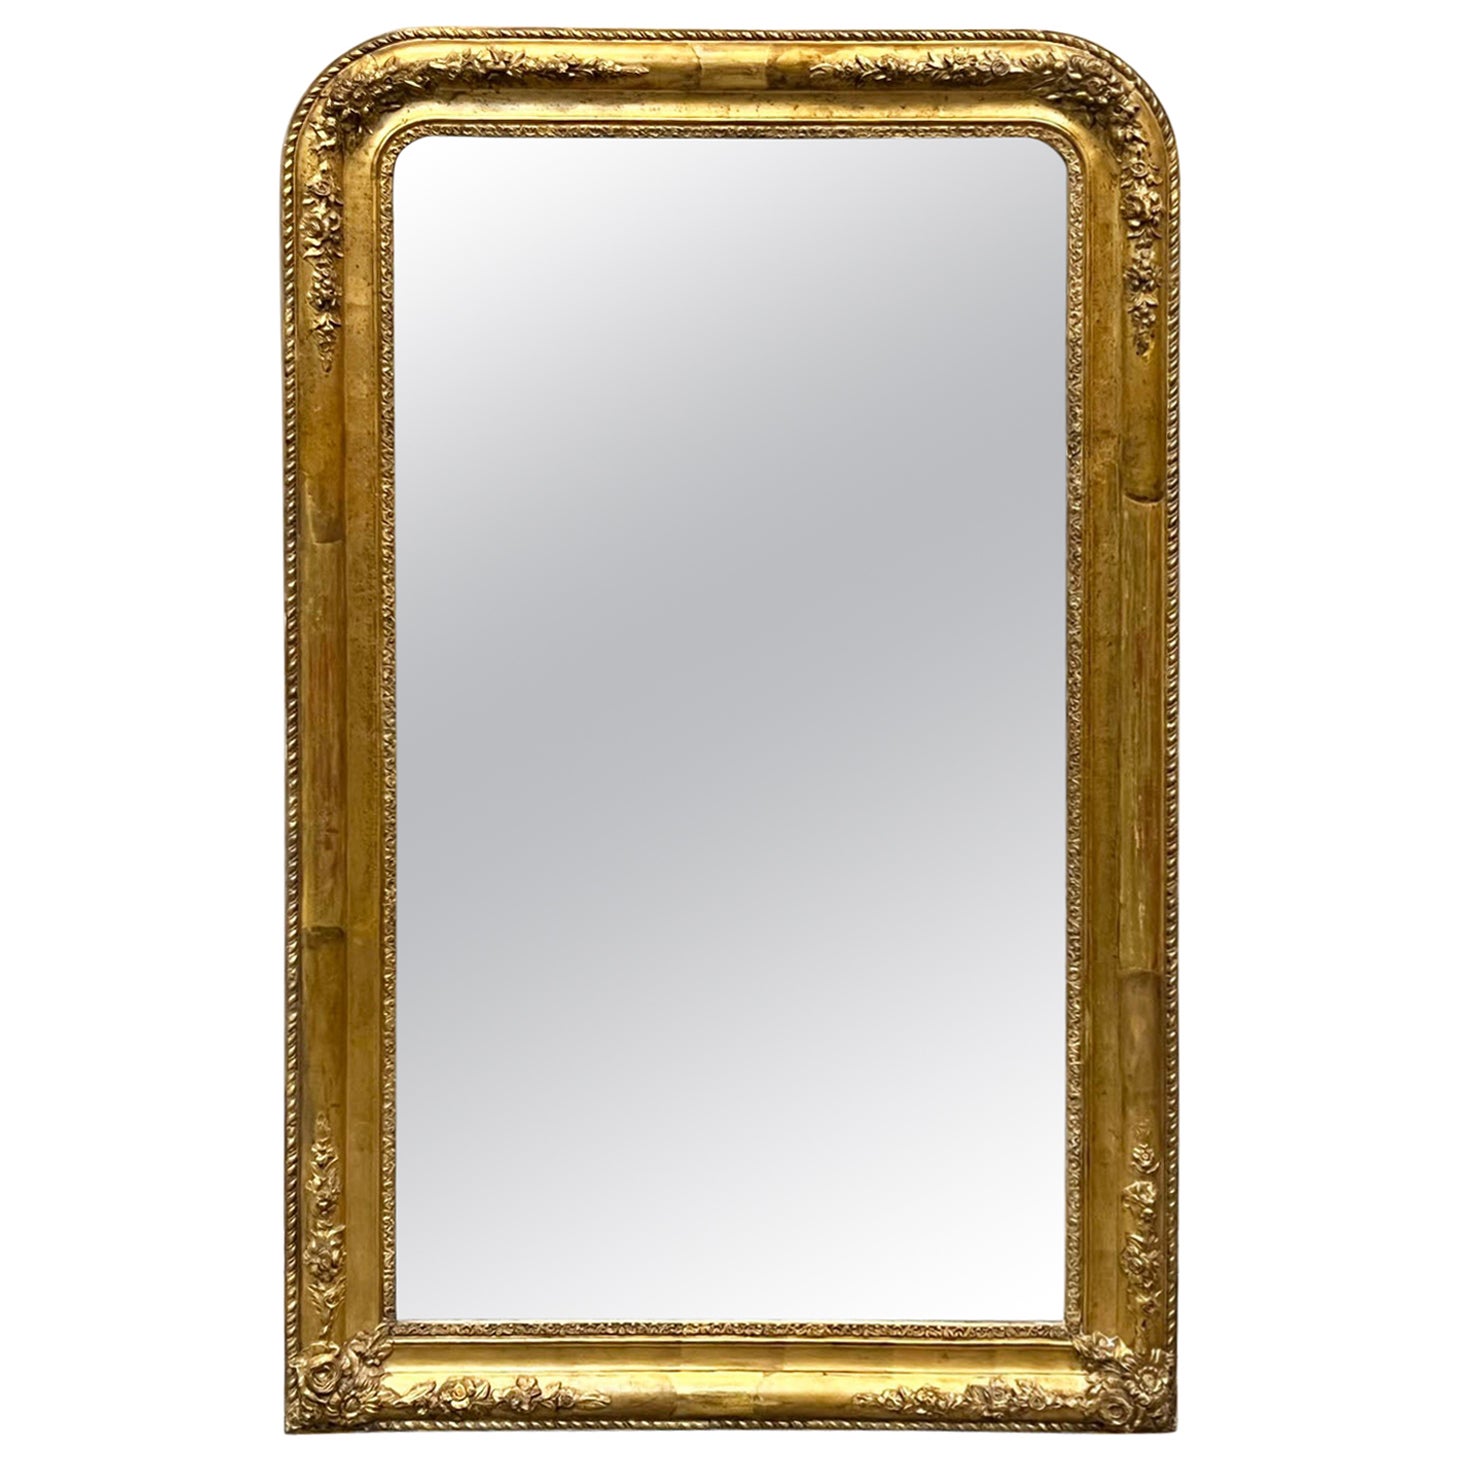 Miroir Louis Philippe français du 19ème siècle doré à l'or avec ornementation